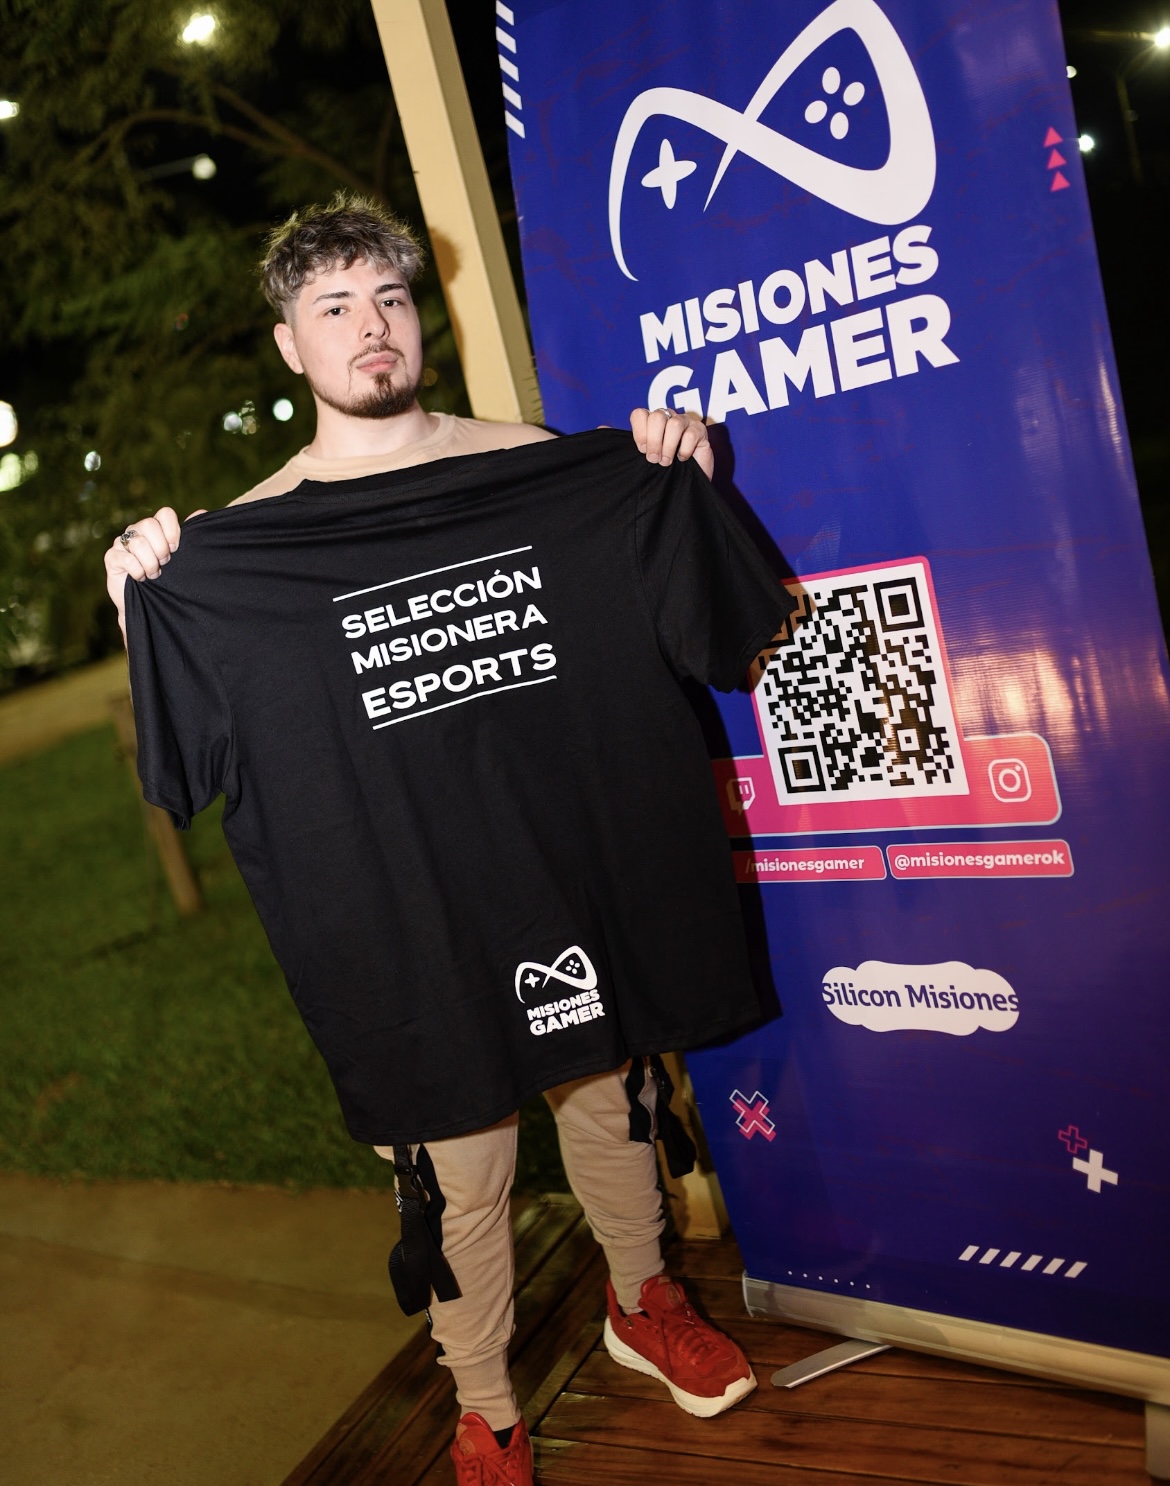 Misiones Gamer presentó a la selección misionera de esports “Urutaú” imagen-2